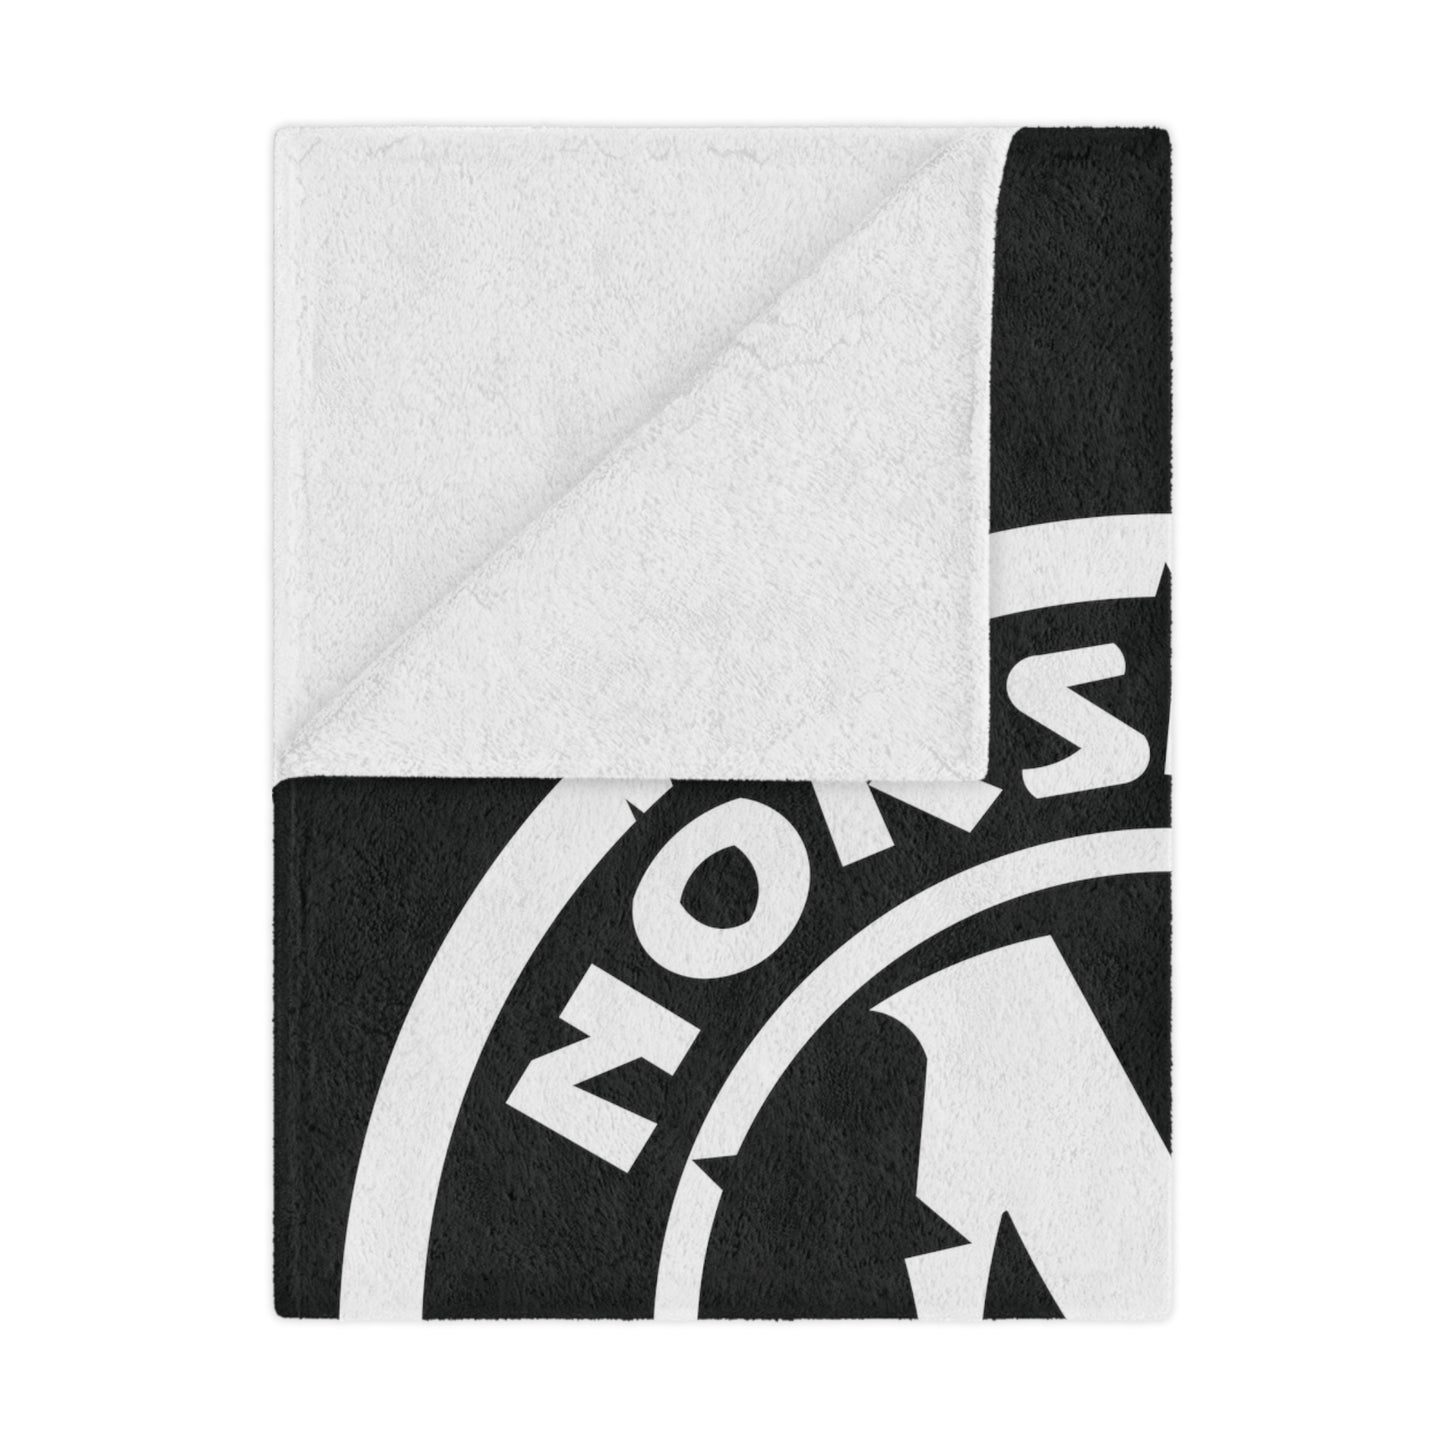 Minky Blanket Black | Norsemen Hockey Alt Logo White